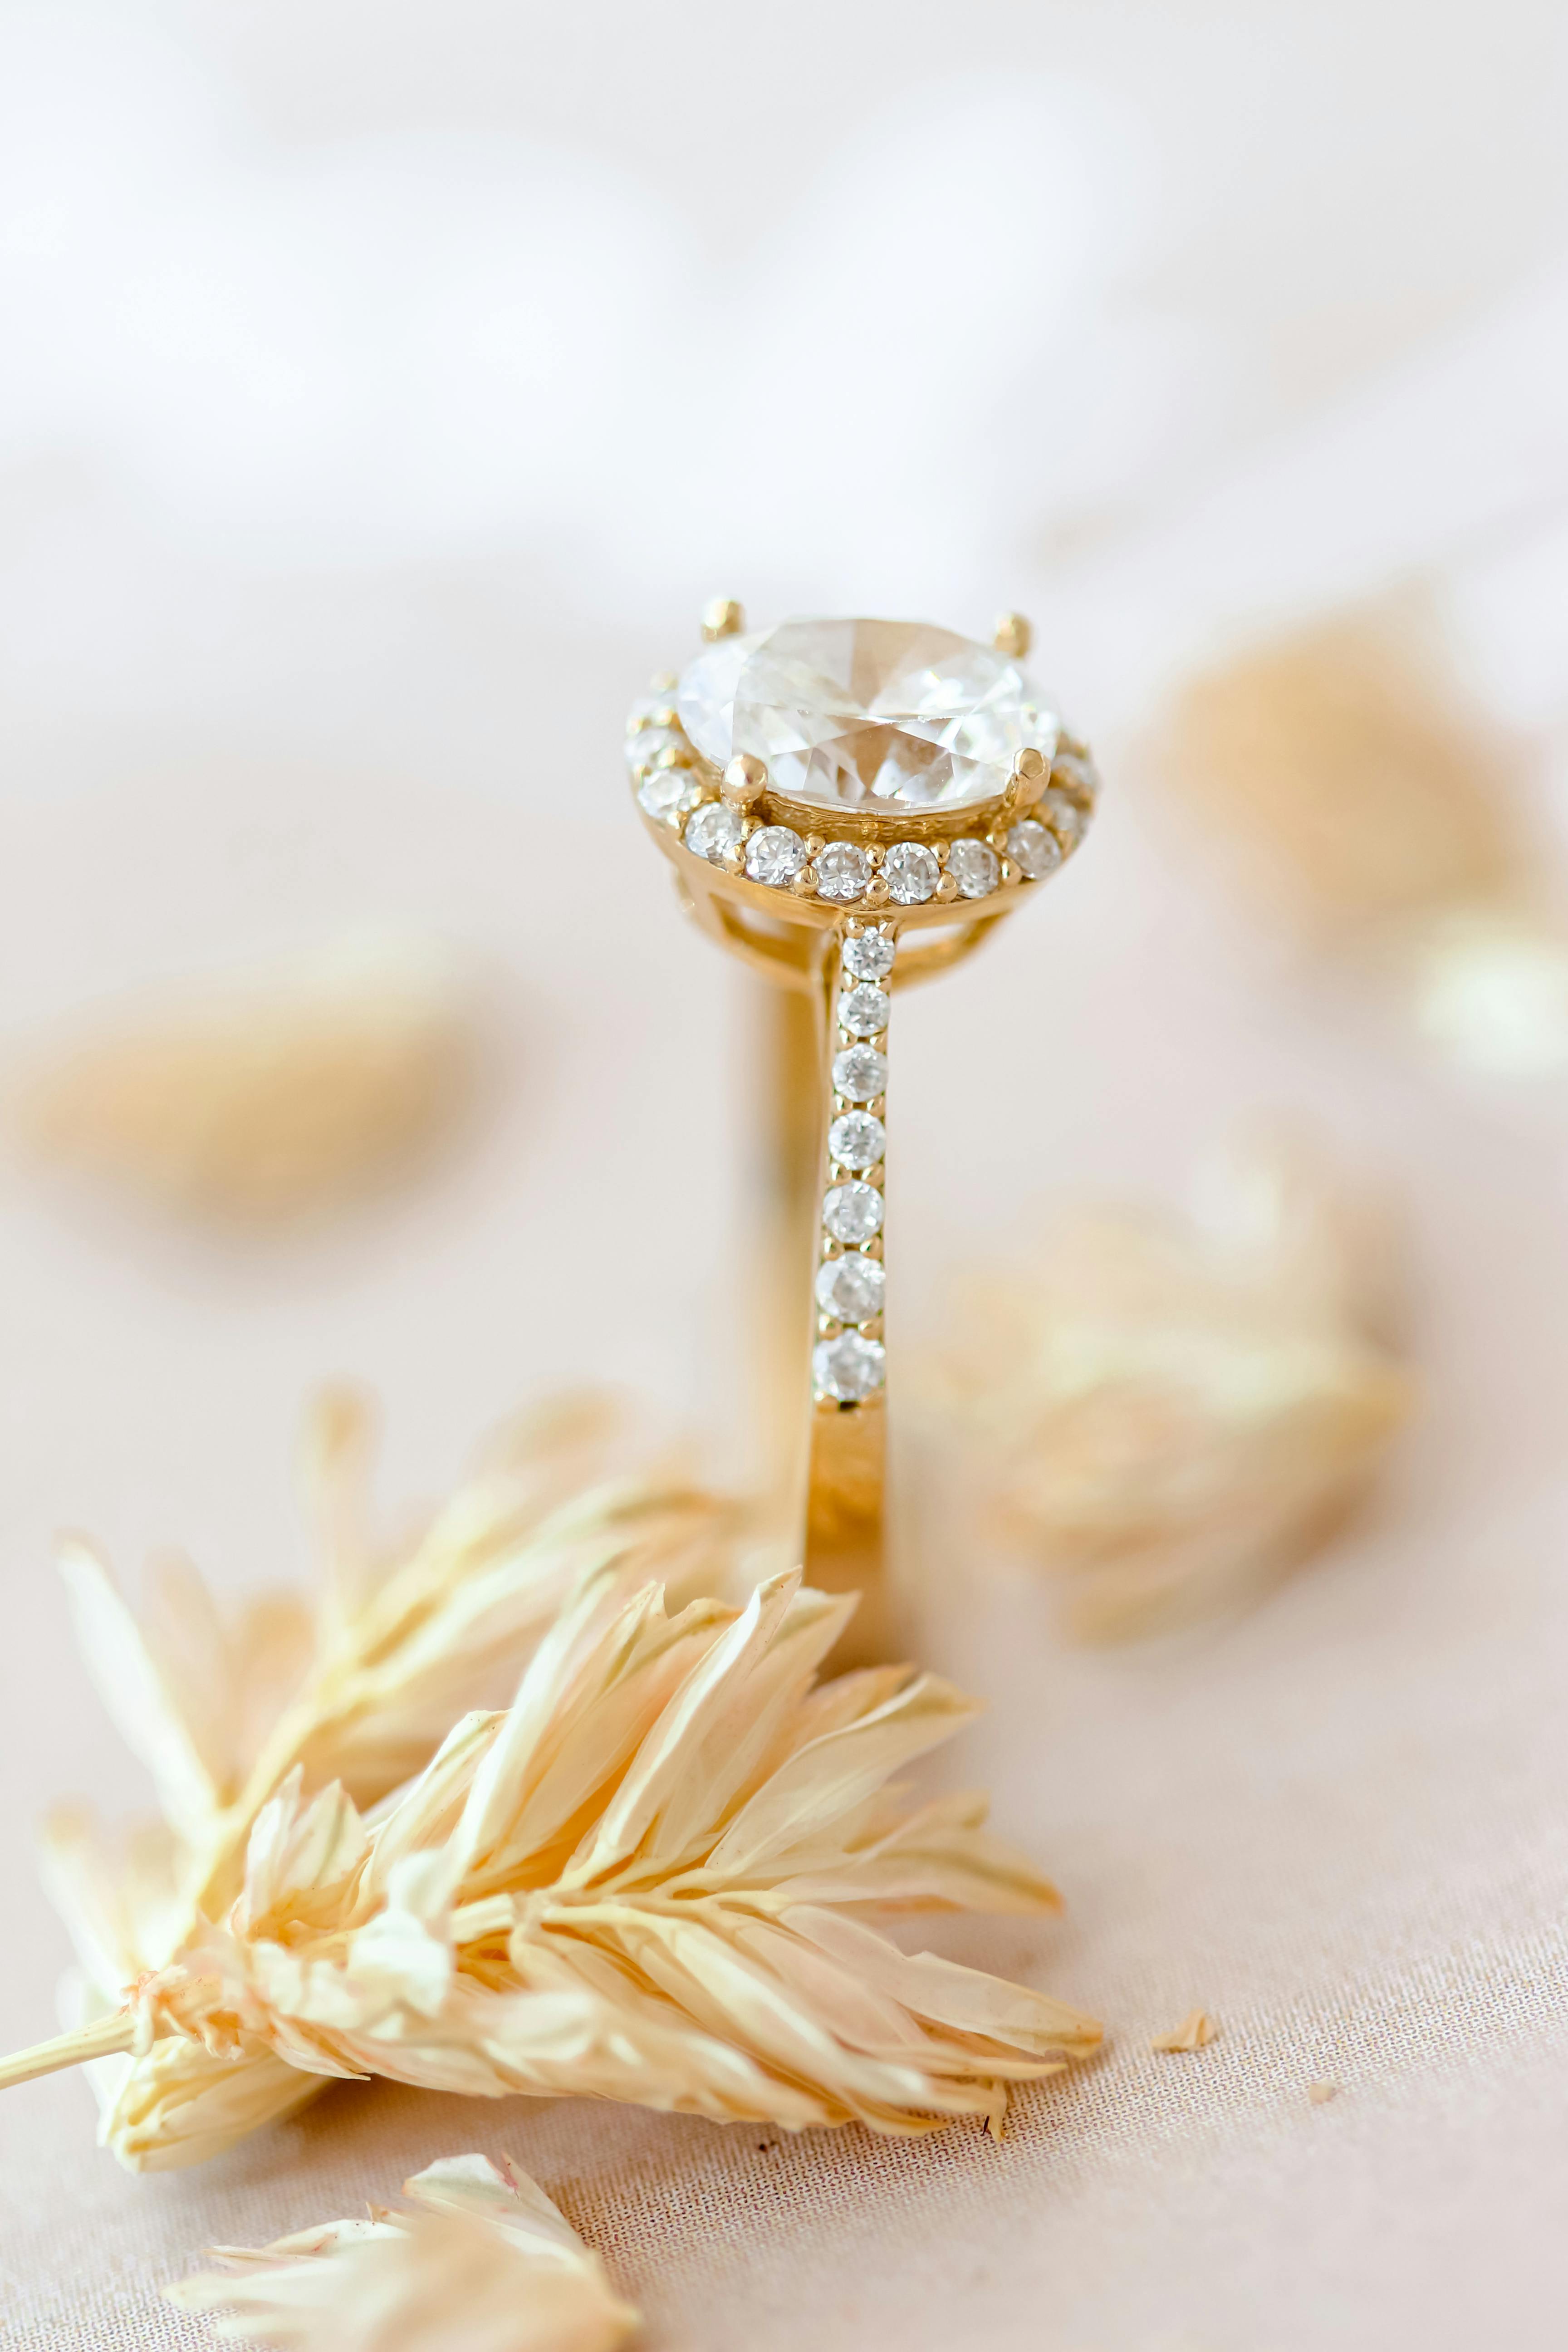 Un anillo de diamantes de oro amarillo | Fuente: Pexels